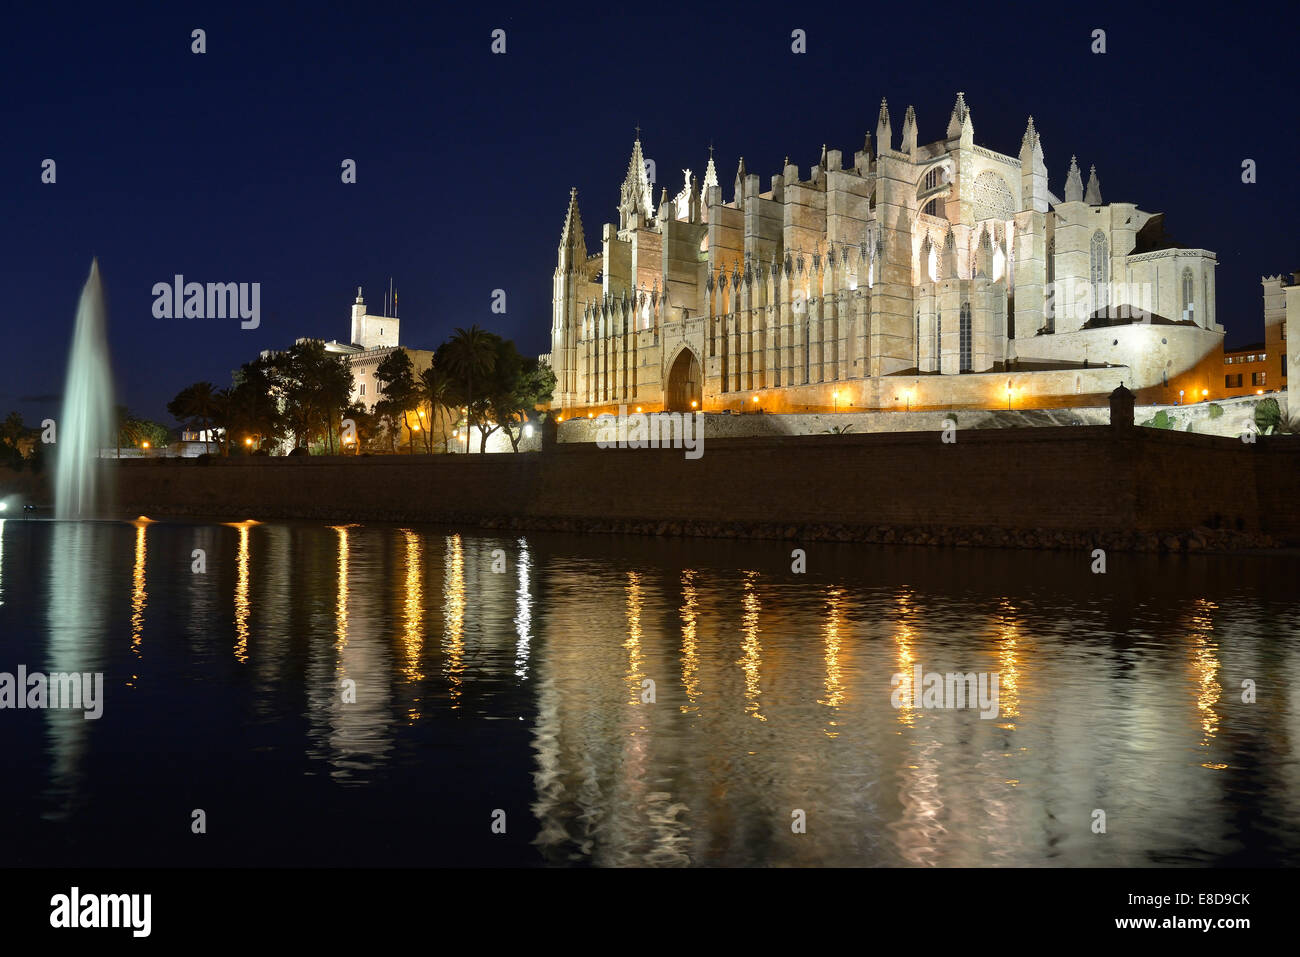 Kathedrale La Seu, Palma Kathedrale, in der Abenddämmerung, Palma, Mallorca, Balearen, Spanien Stockfoto